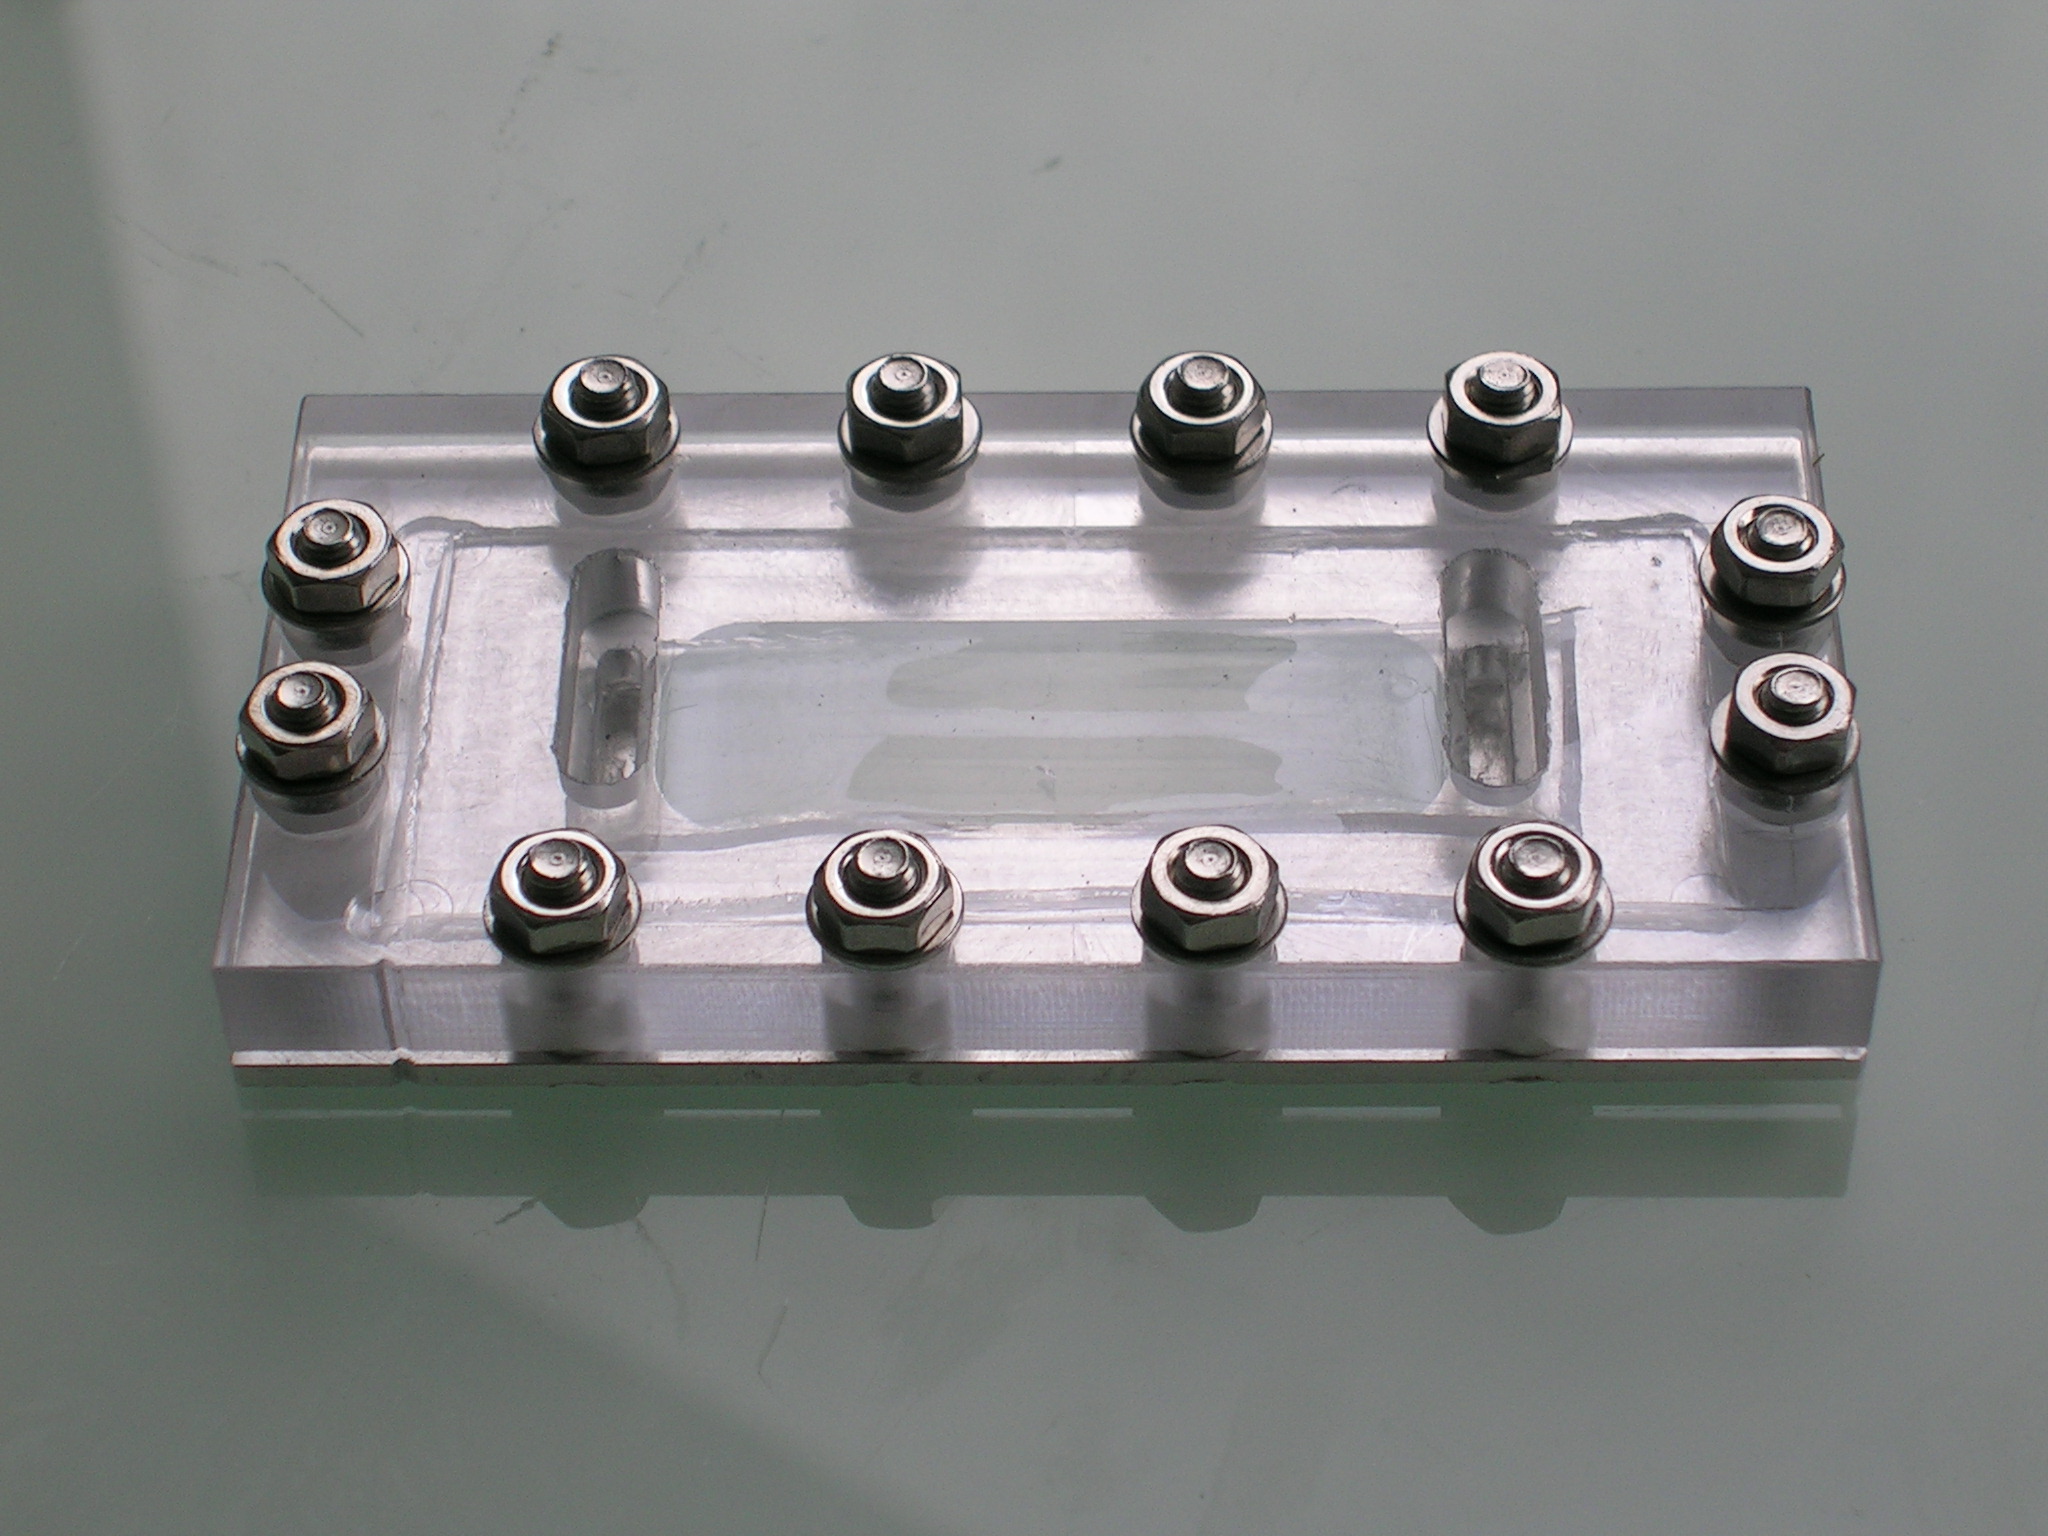 2 Montage utilise pour permettre l e tanche ification et l observation du circuit microfluidique a 3 canaux en gel.